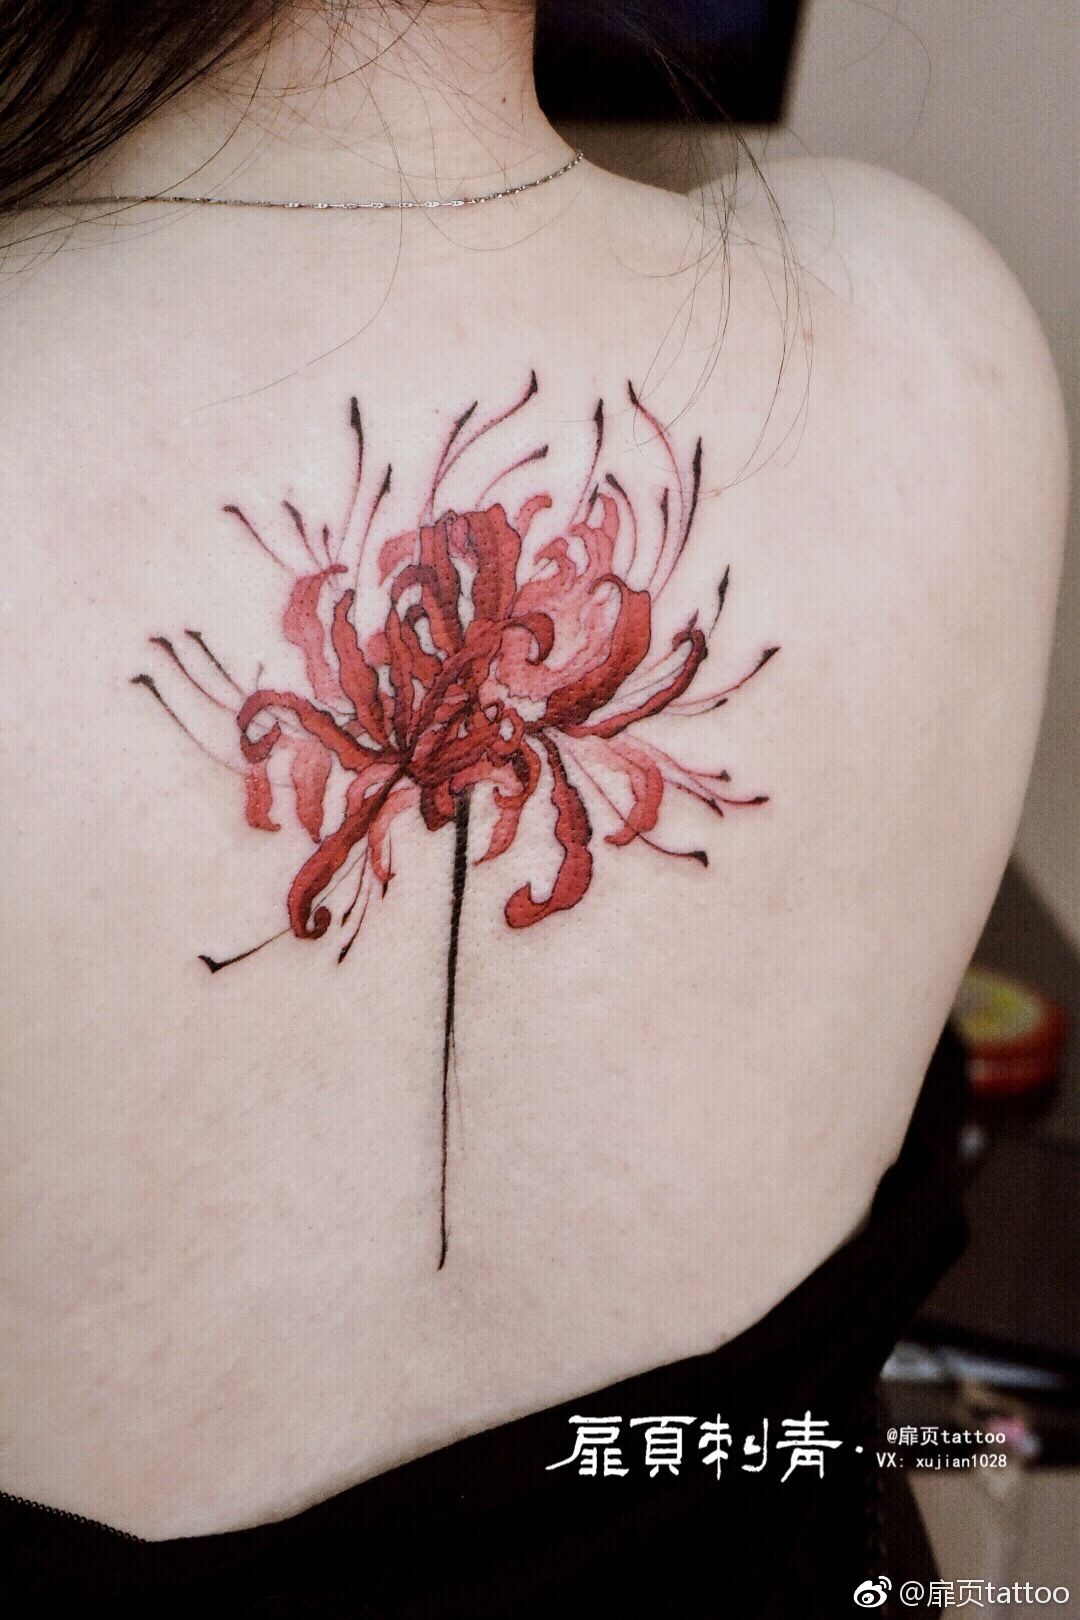 Hoa bỉ ngạn xinh đẹp ở phίa sau lưng